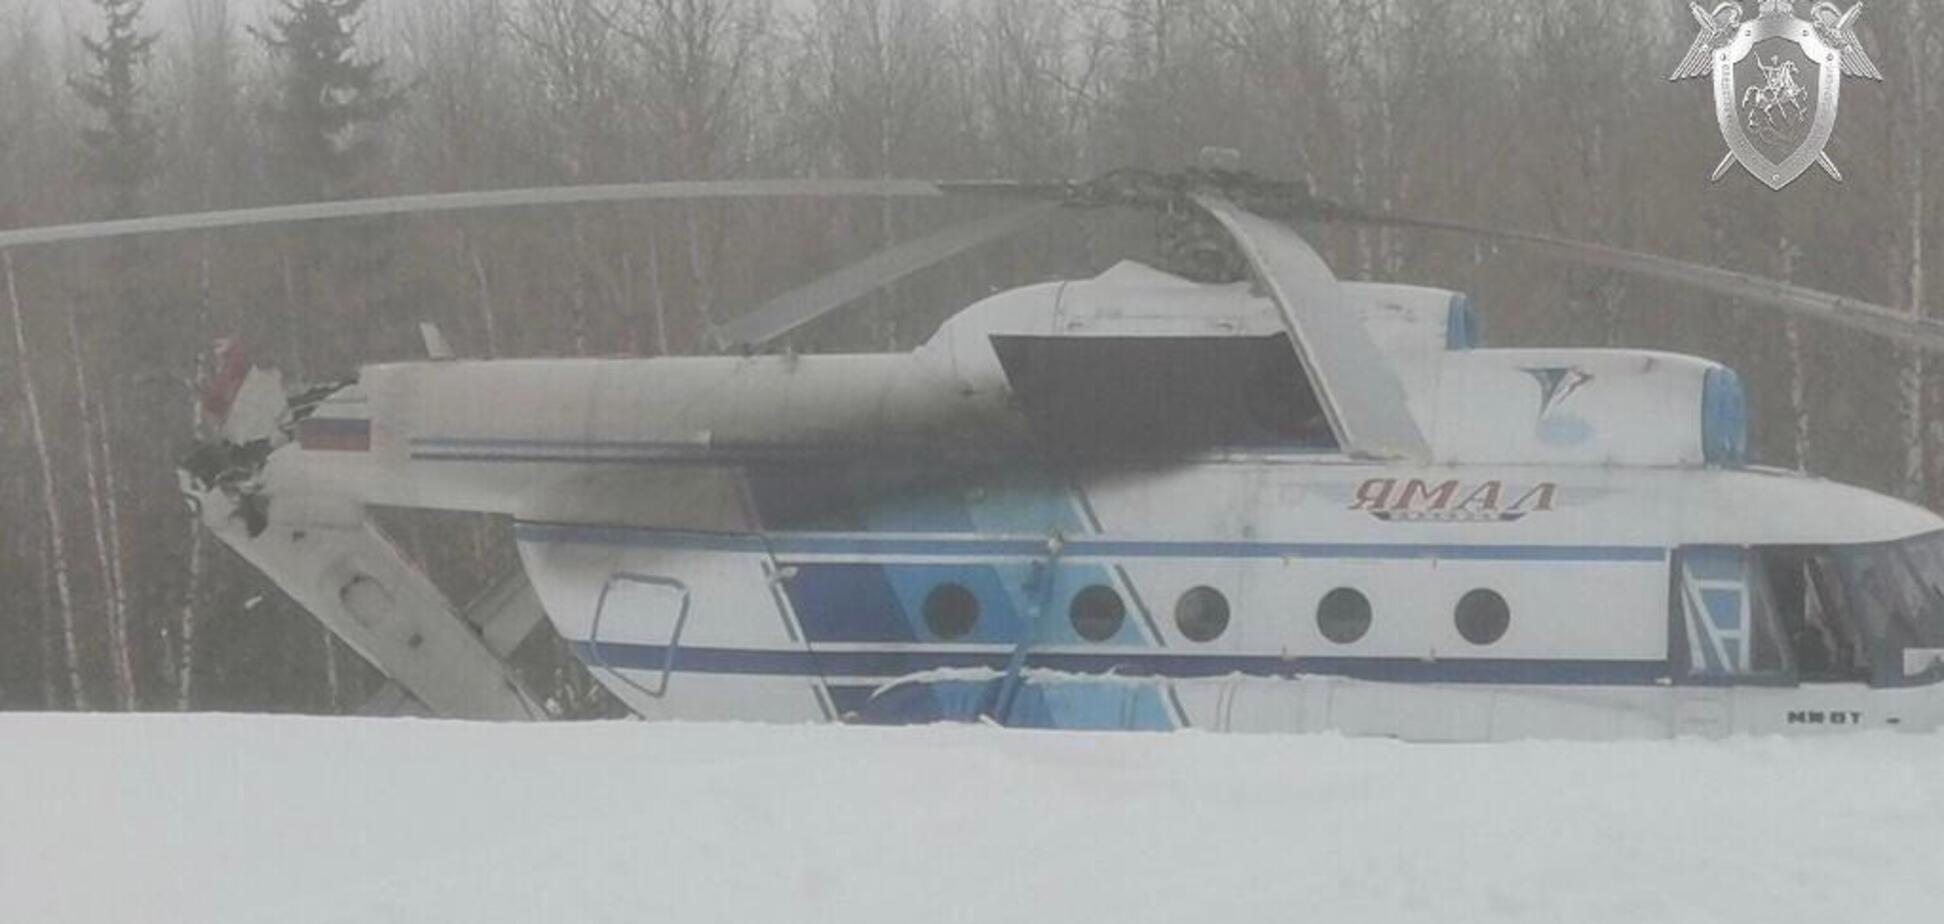  Отвалился хвост: в России случилось новое ЧП с вертолетом